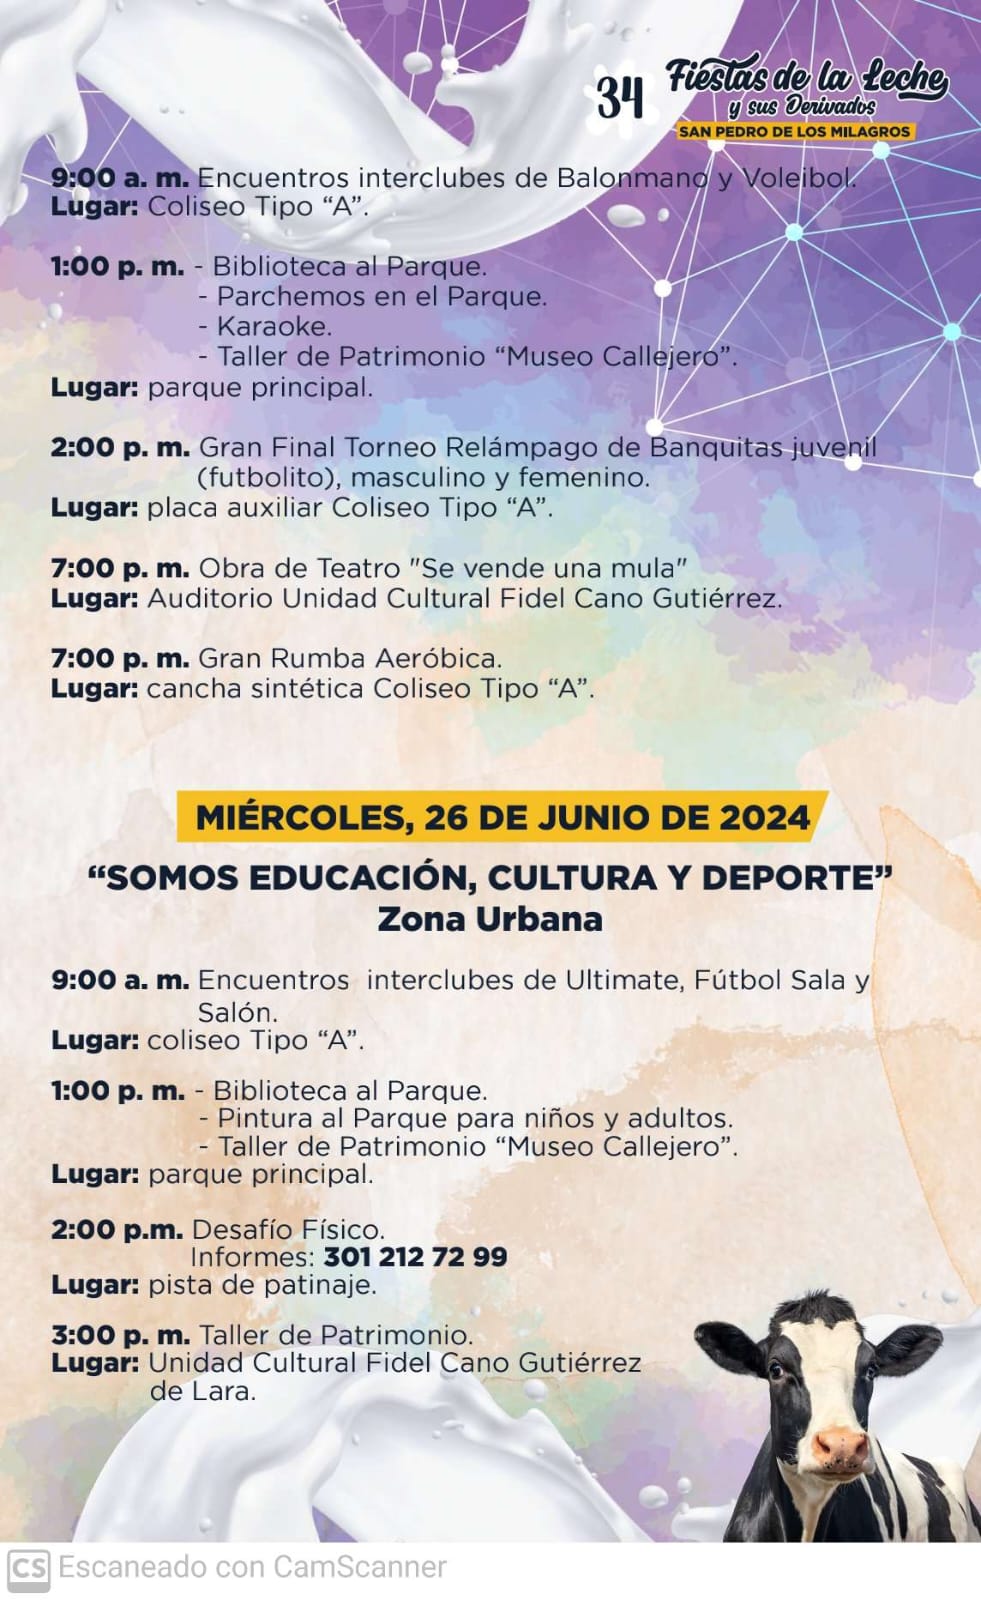 Fiestas de la Leche 2024 - San Pedro de los Milagros - Antioquia - 6